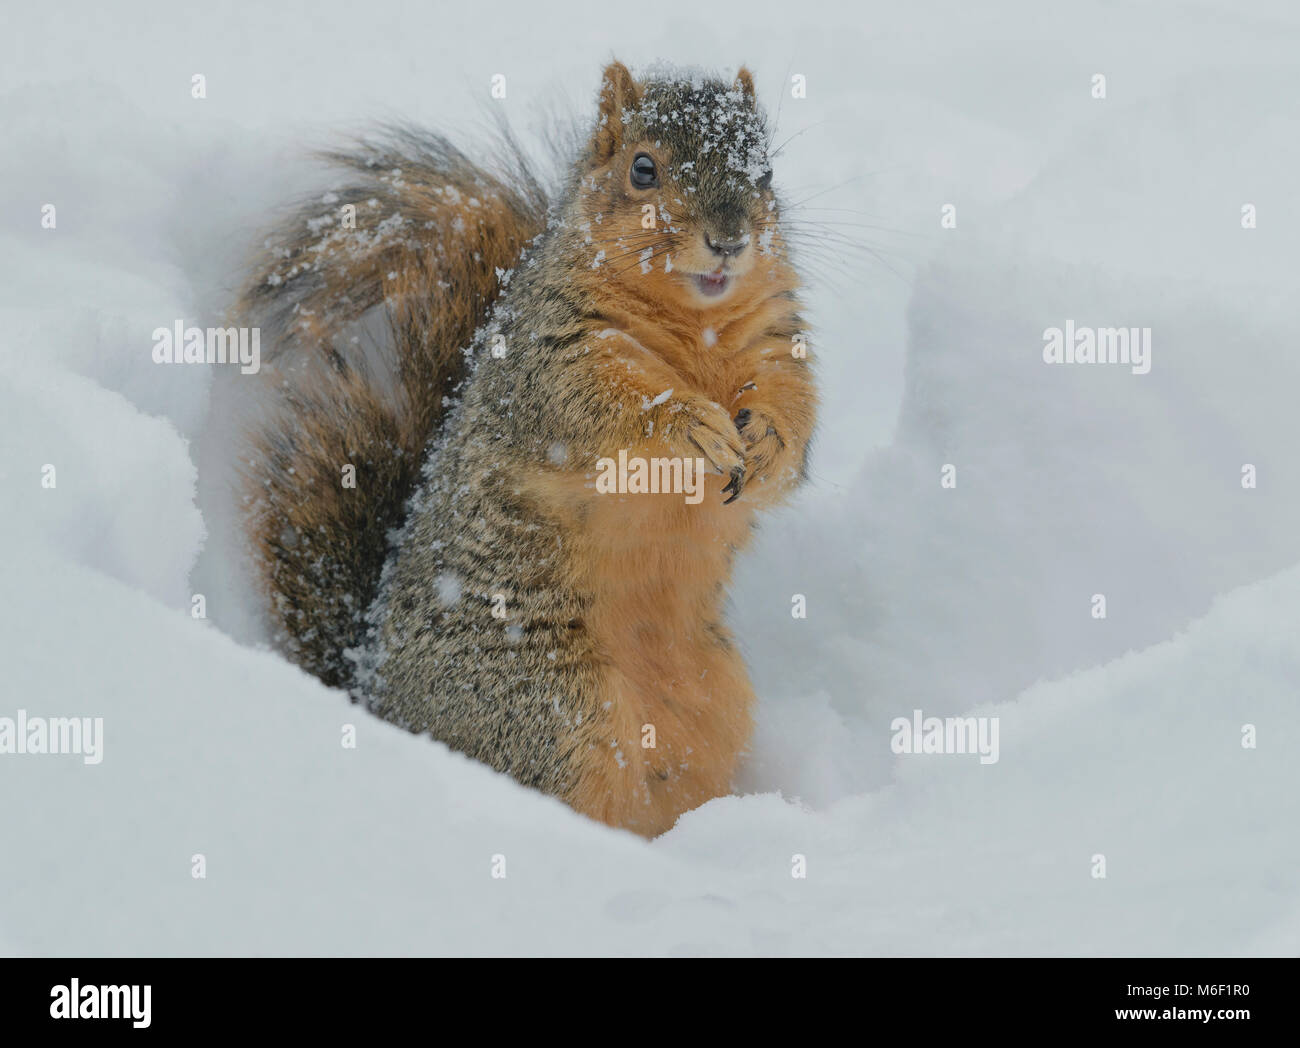 Fox scoiattolo (Sciurus niger), inverno, E STATI UNITI D'AMERICA da saltare Moody/Dembinsky Foto Assoc Foto Stock